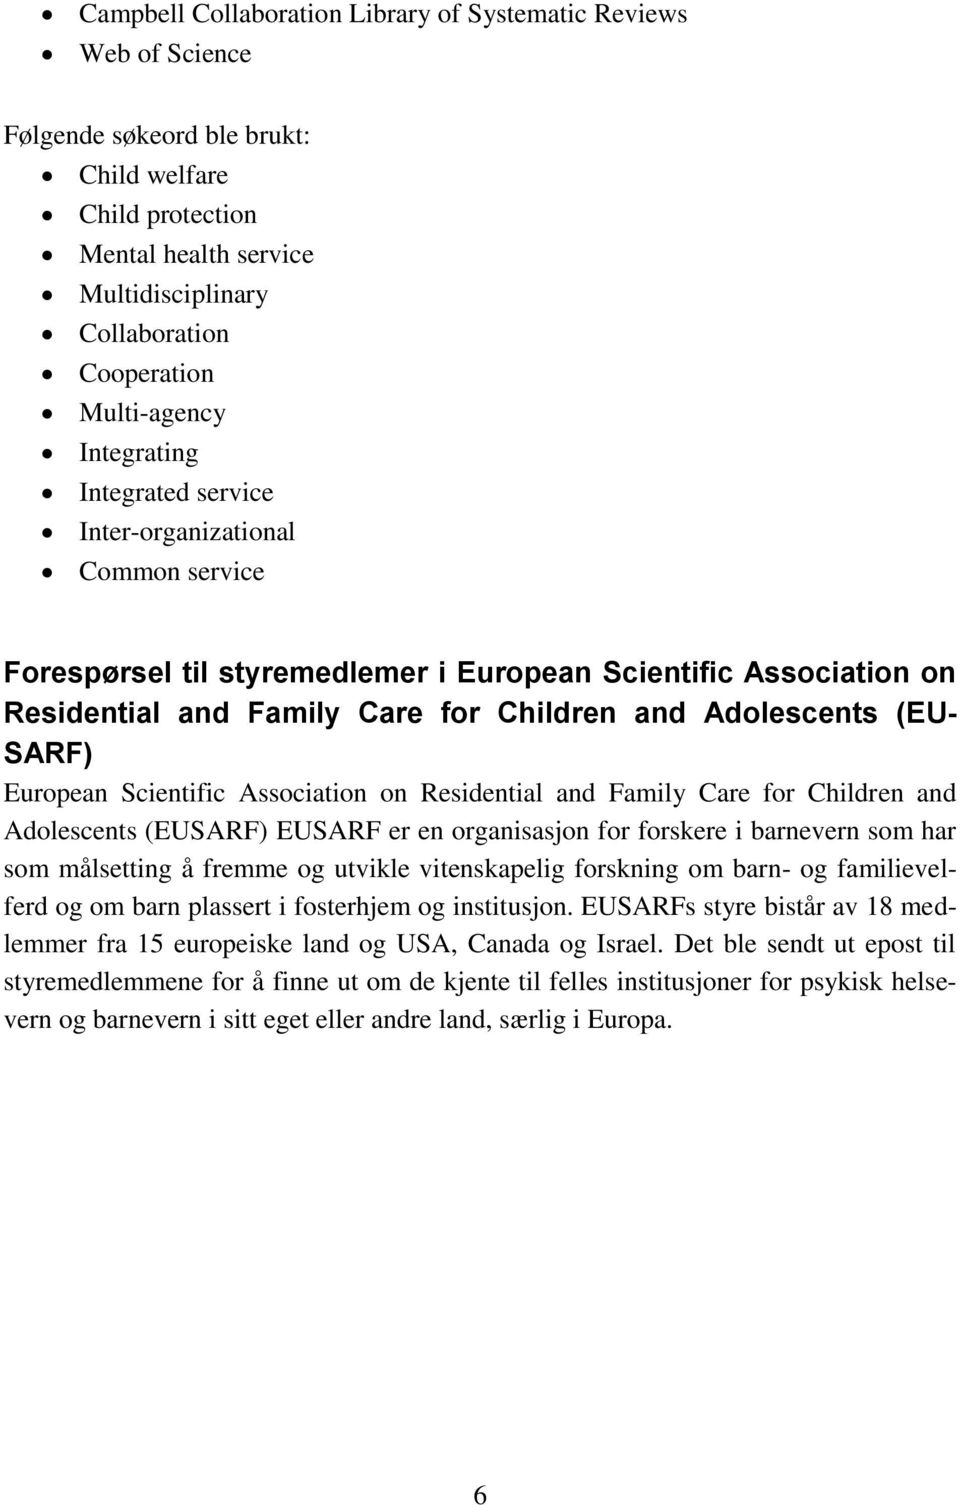 Adolescents (EU- SARF) European Scientific Association on Residential and Family Care for Children and Adolescents (EUSARF) EUSARF er en organisasjon for forskere i barnevern som har som målsetting å